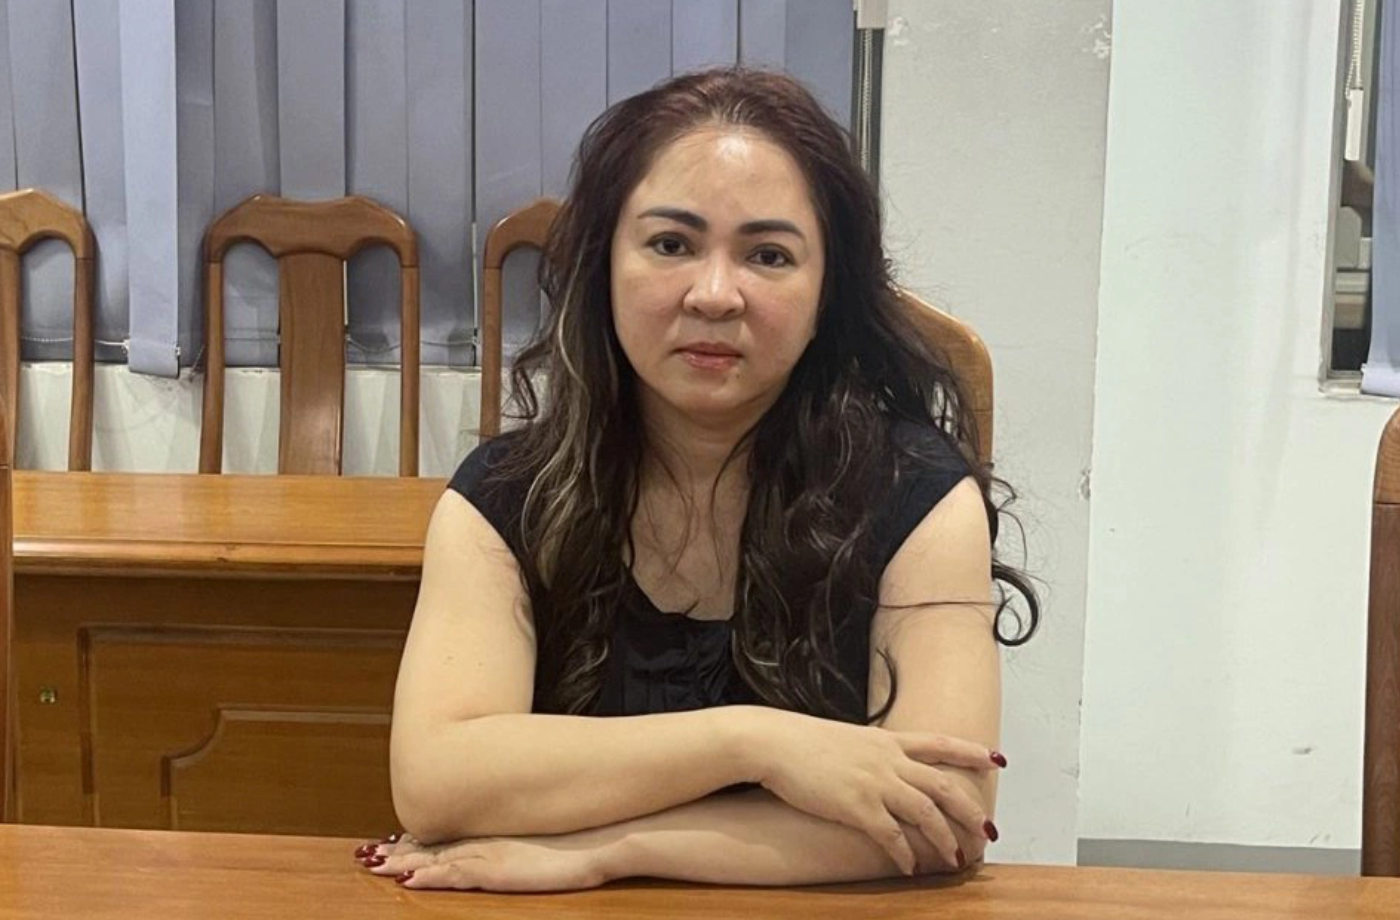 Bà Nguyễn Phương Hằng bị khởi tố, bắt tạm giam vào hôm 24/3. Ảnh: Công an cung cấp.